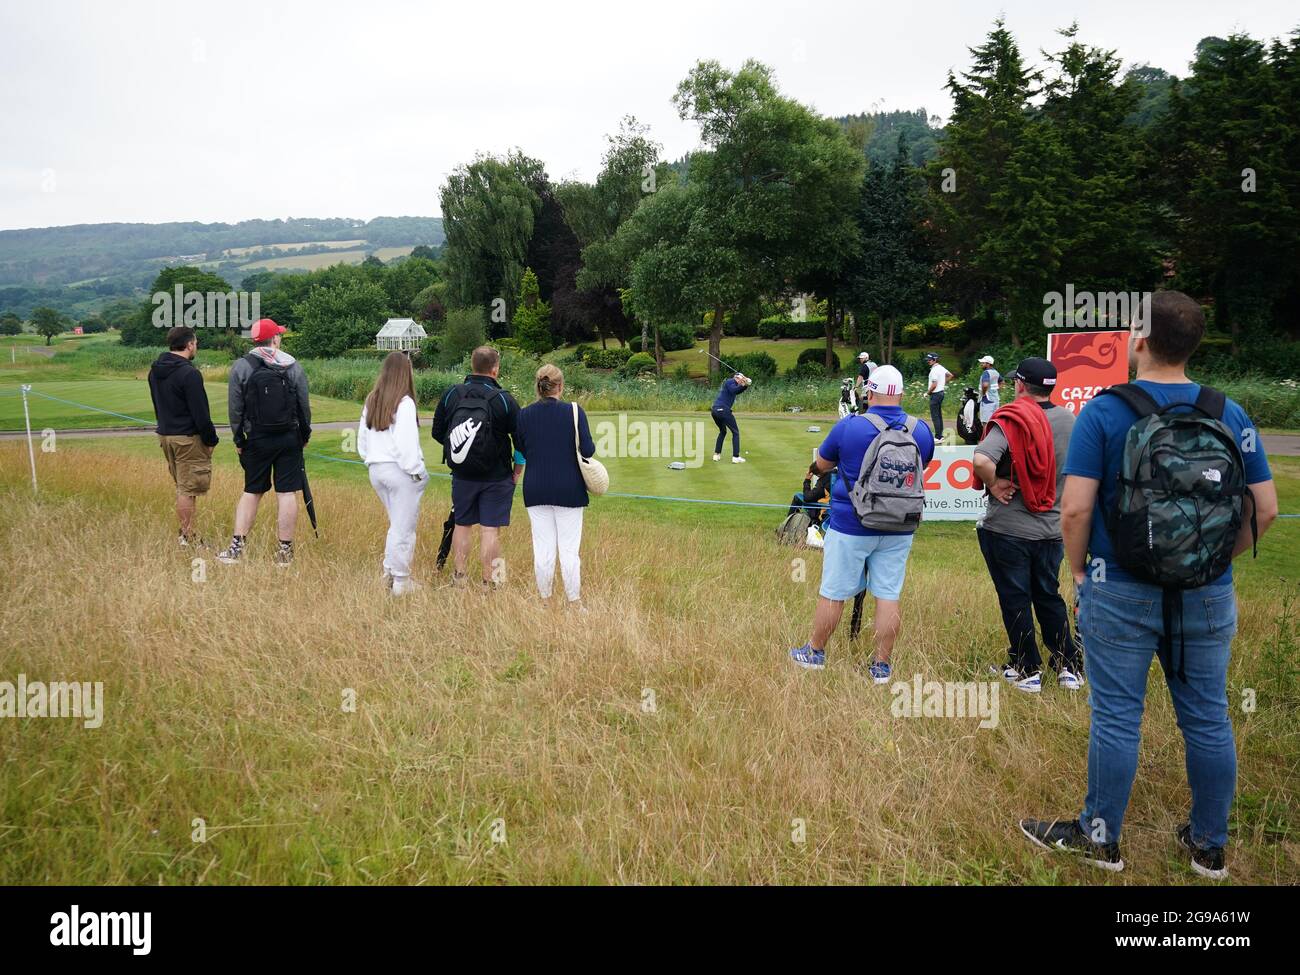 Eine allgemeine Ansicht der Fans, die am vierten Tag des Cazoo Wales Open im Celtic Manor Resort in Newport, Wales, das 5. Loch beobachten. Bilddatum: Sonntag, 25. Juli 2021. Stockfoto